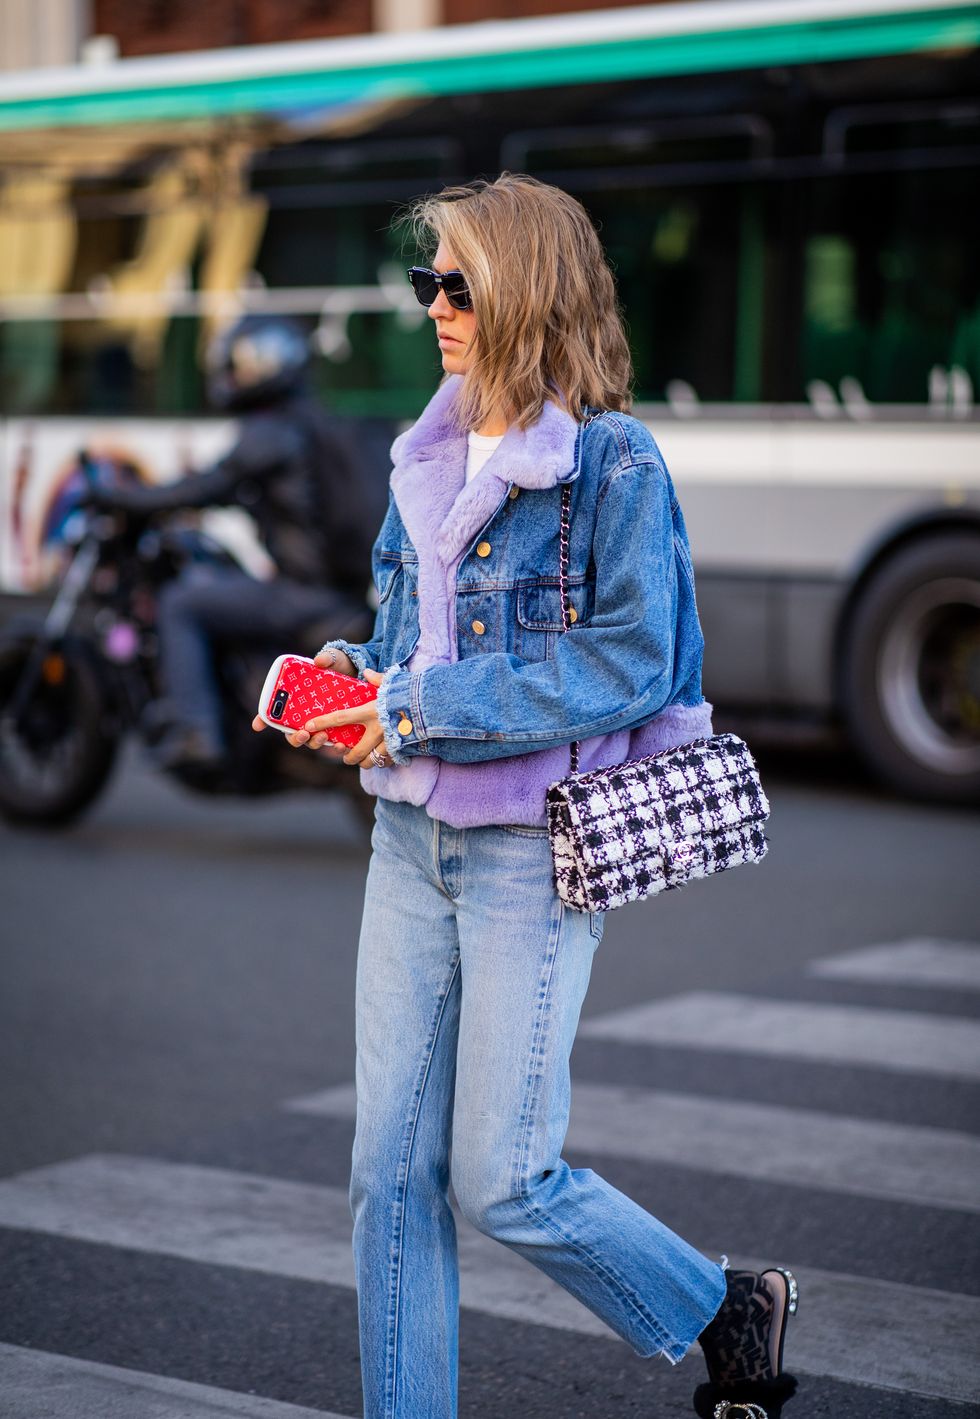 tendenza jeans 2019, come indossare i jeans 2019, moda jeans inverno 2019